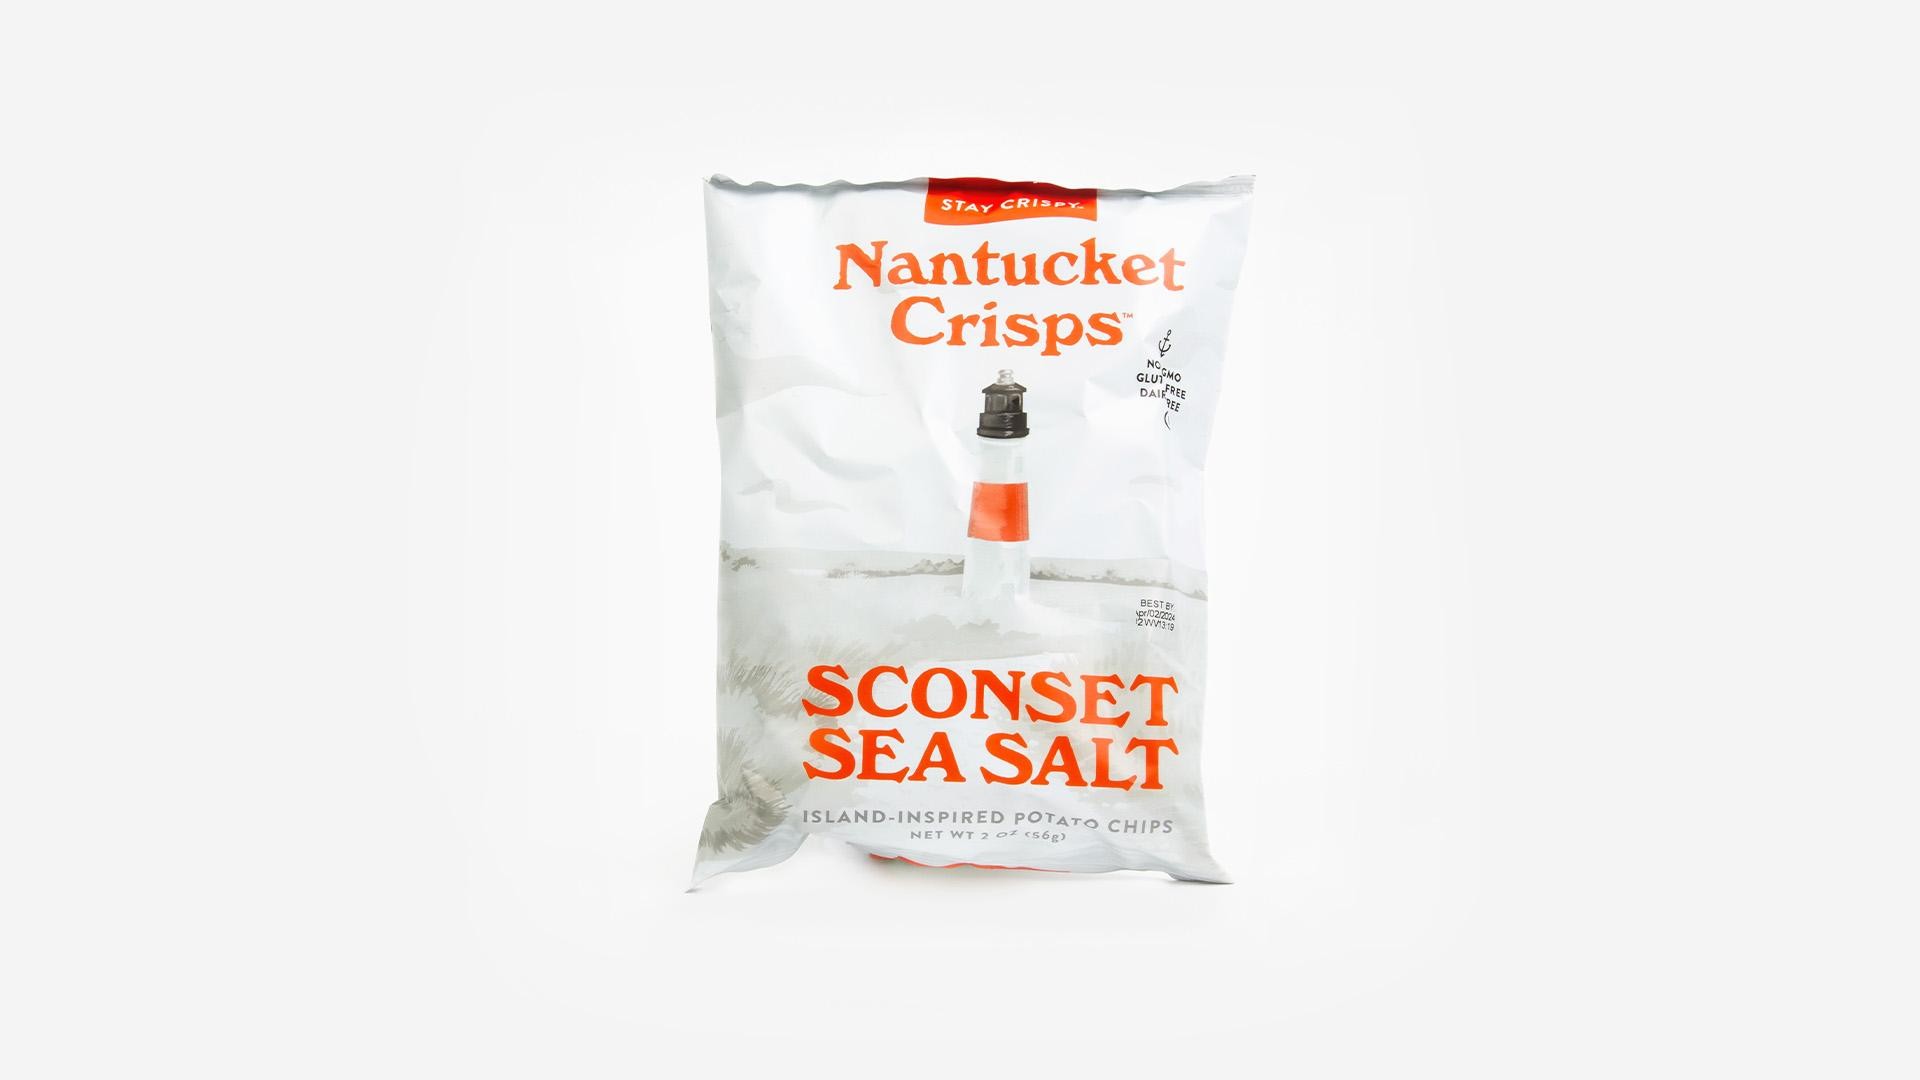 Nantucket Crisps Sconset Sea Salt Chips